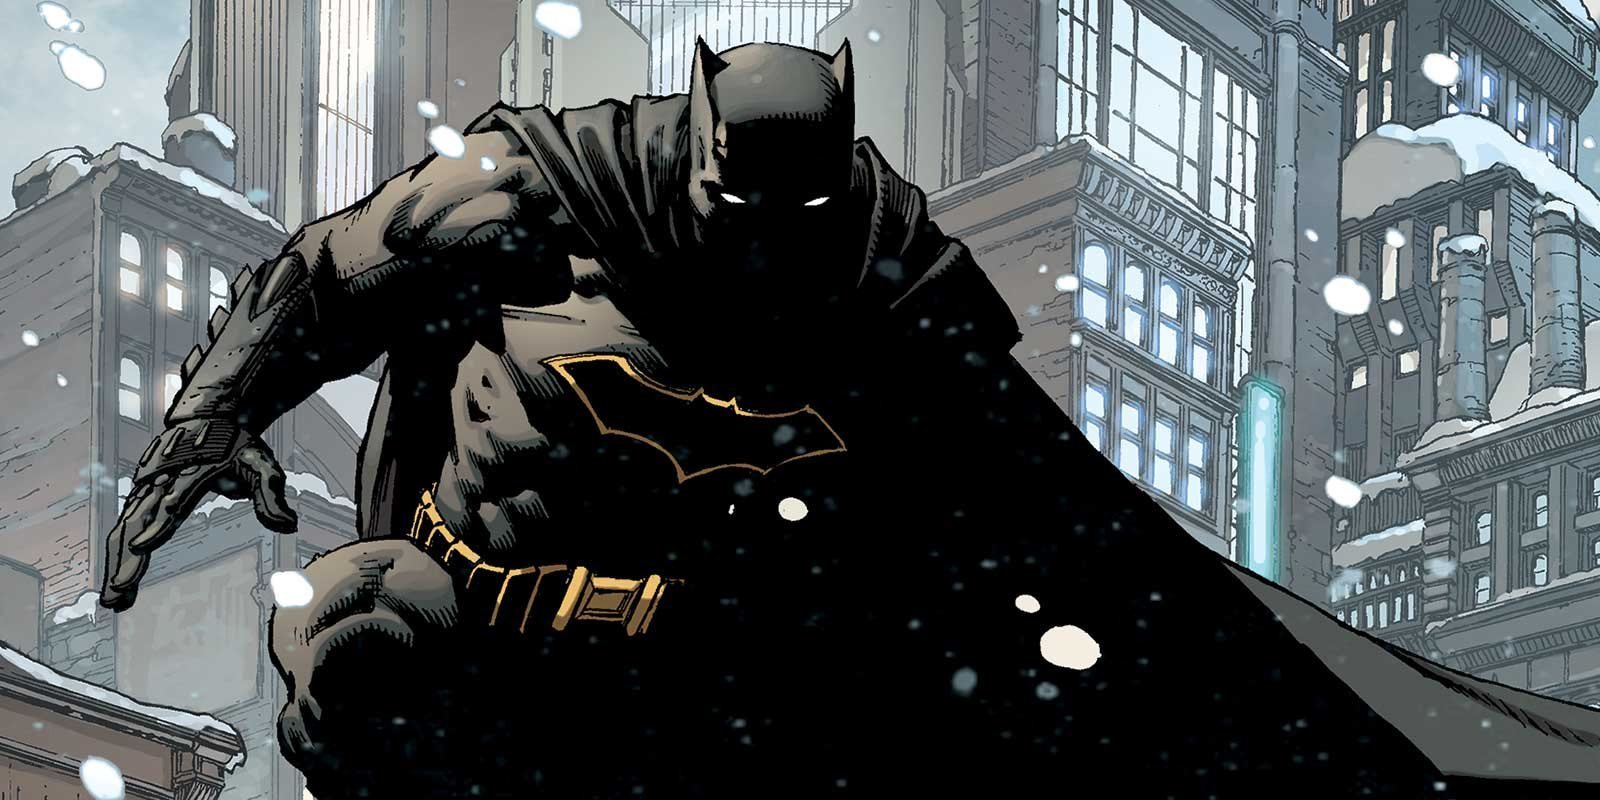 El guion de 'The Batman' ya estaría terminado y en manos de Warner